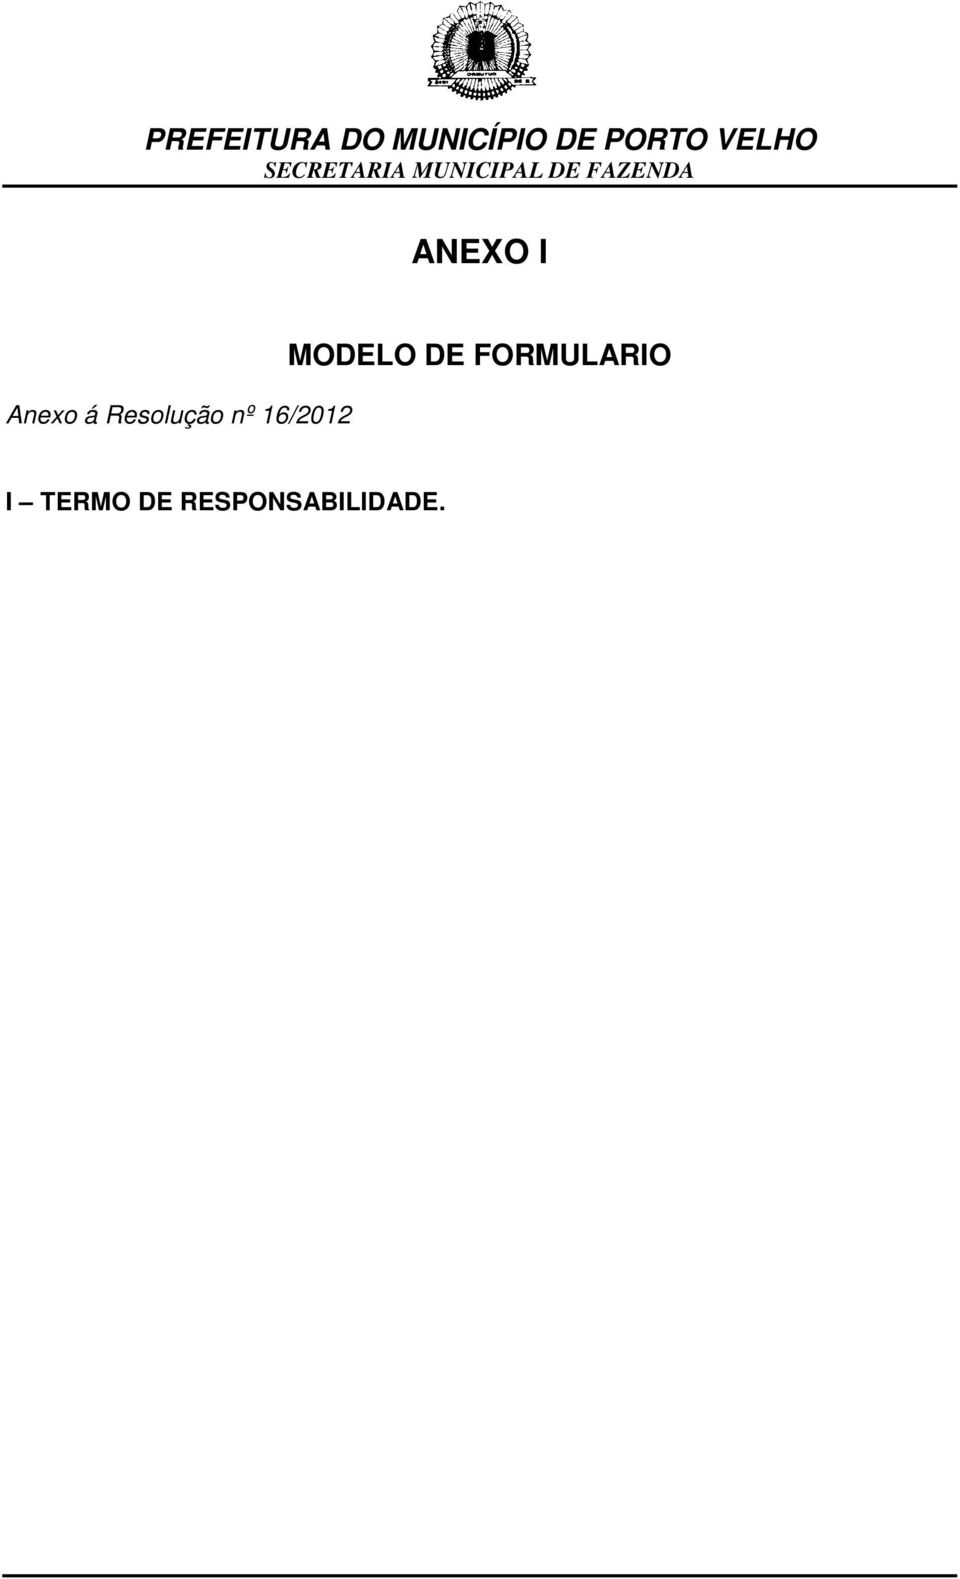 MODELO DE FORMULARIO